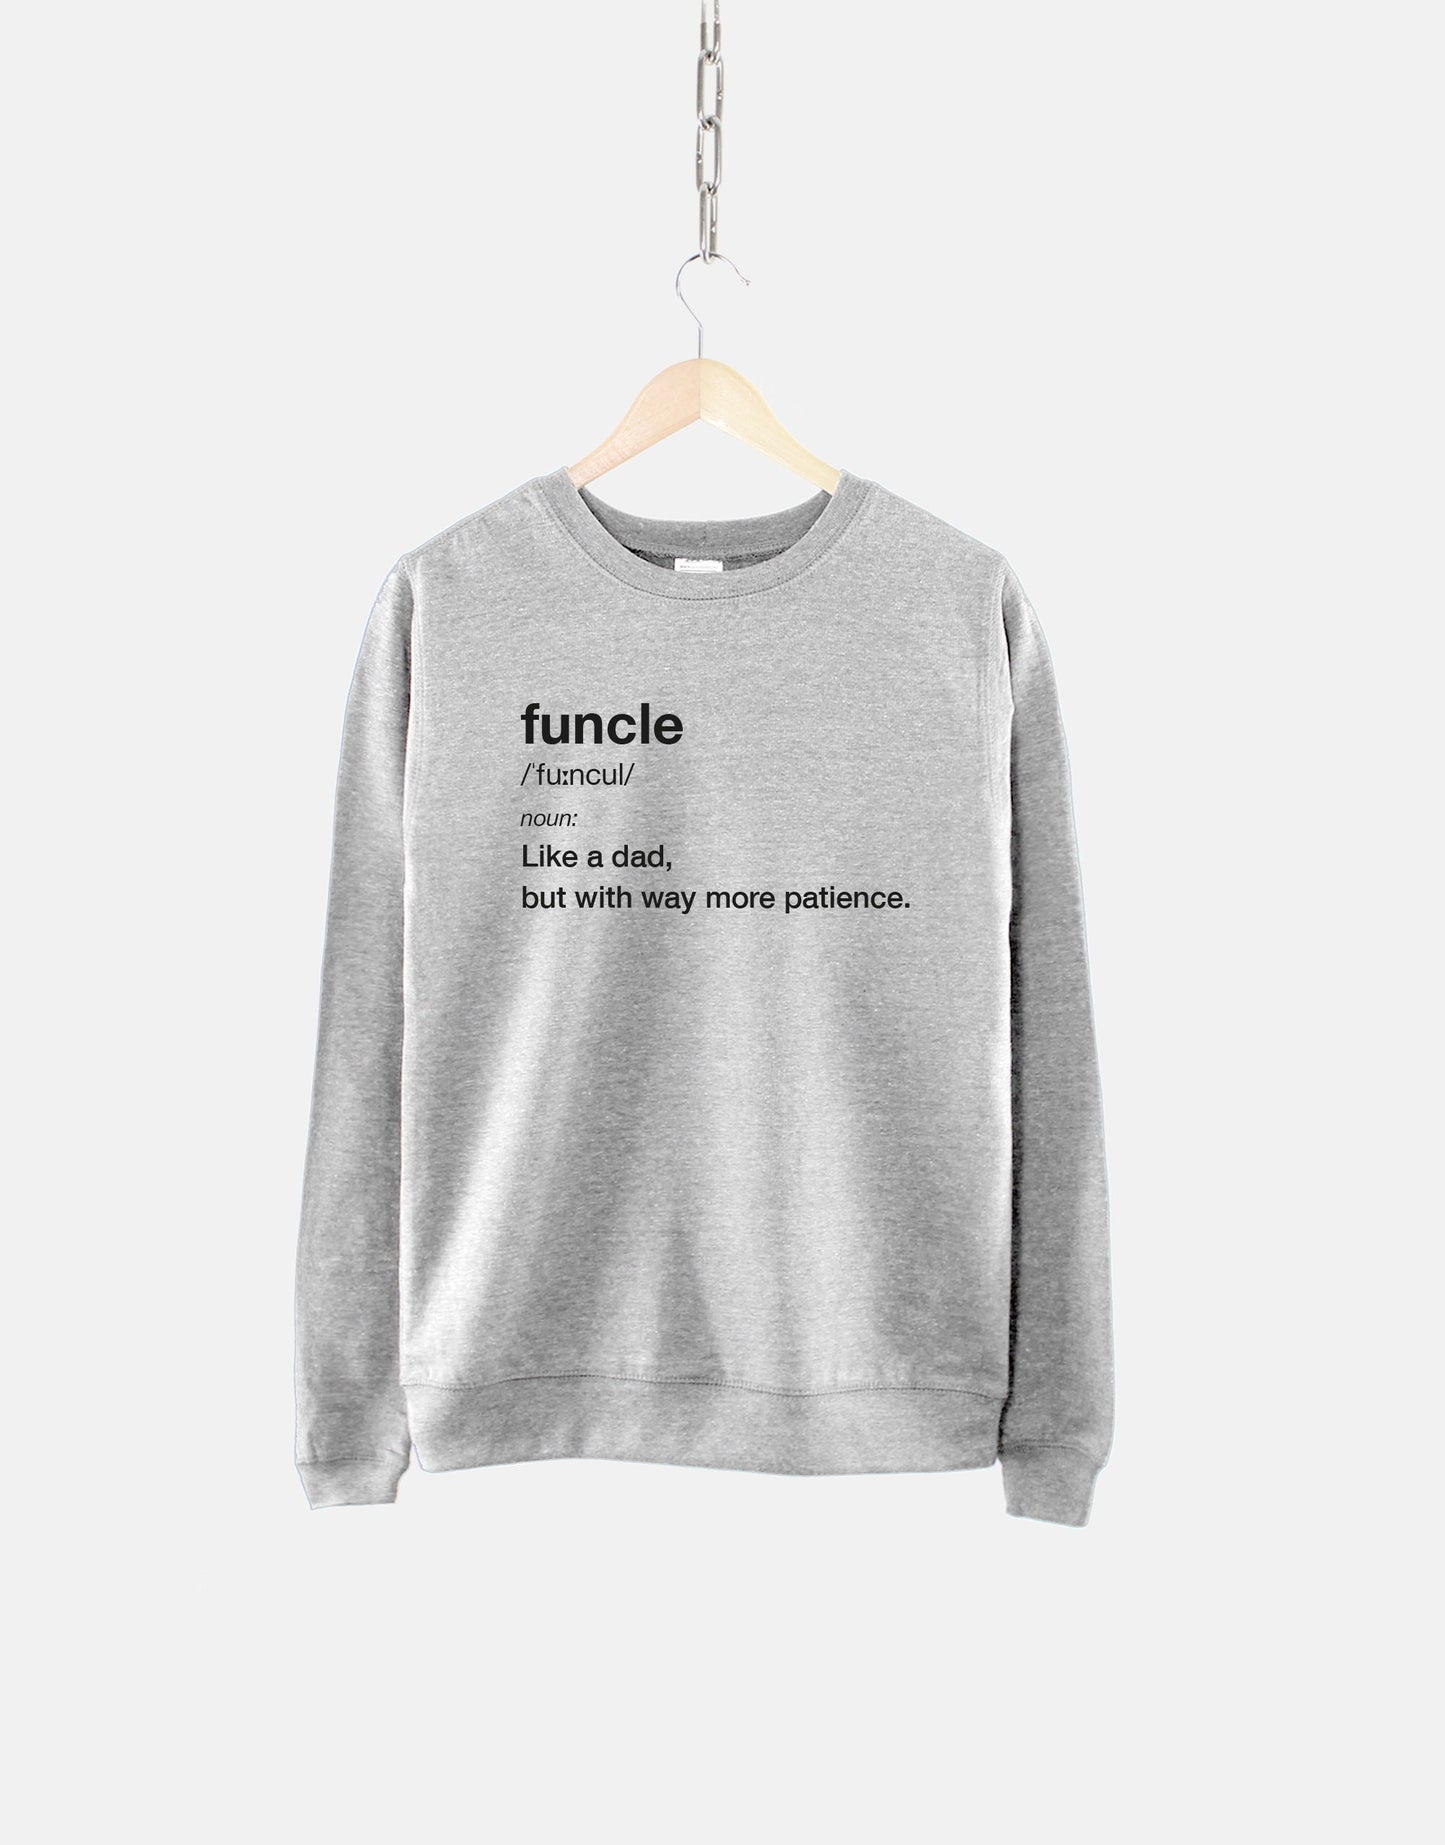 Personalised Funcle Sweatshirt - Funcle Definition Sweater - Fun Uncle Shirt - Cool Uncle Sweatshirt - Favorite Uncle Best Uncle Ever